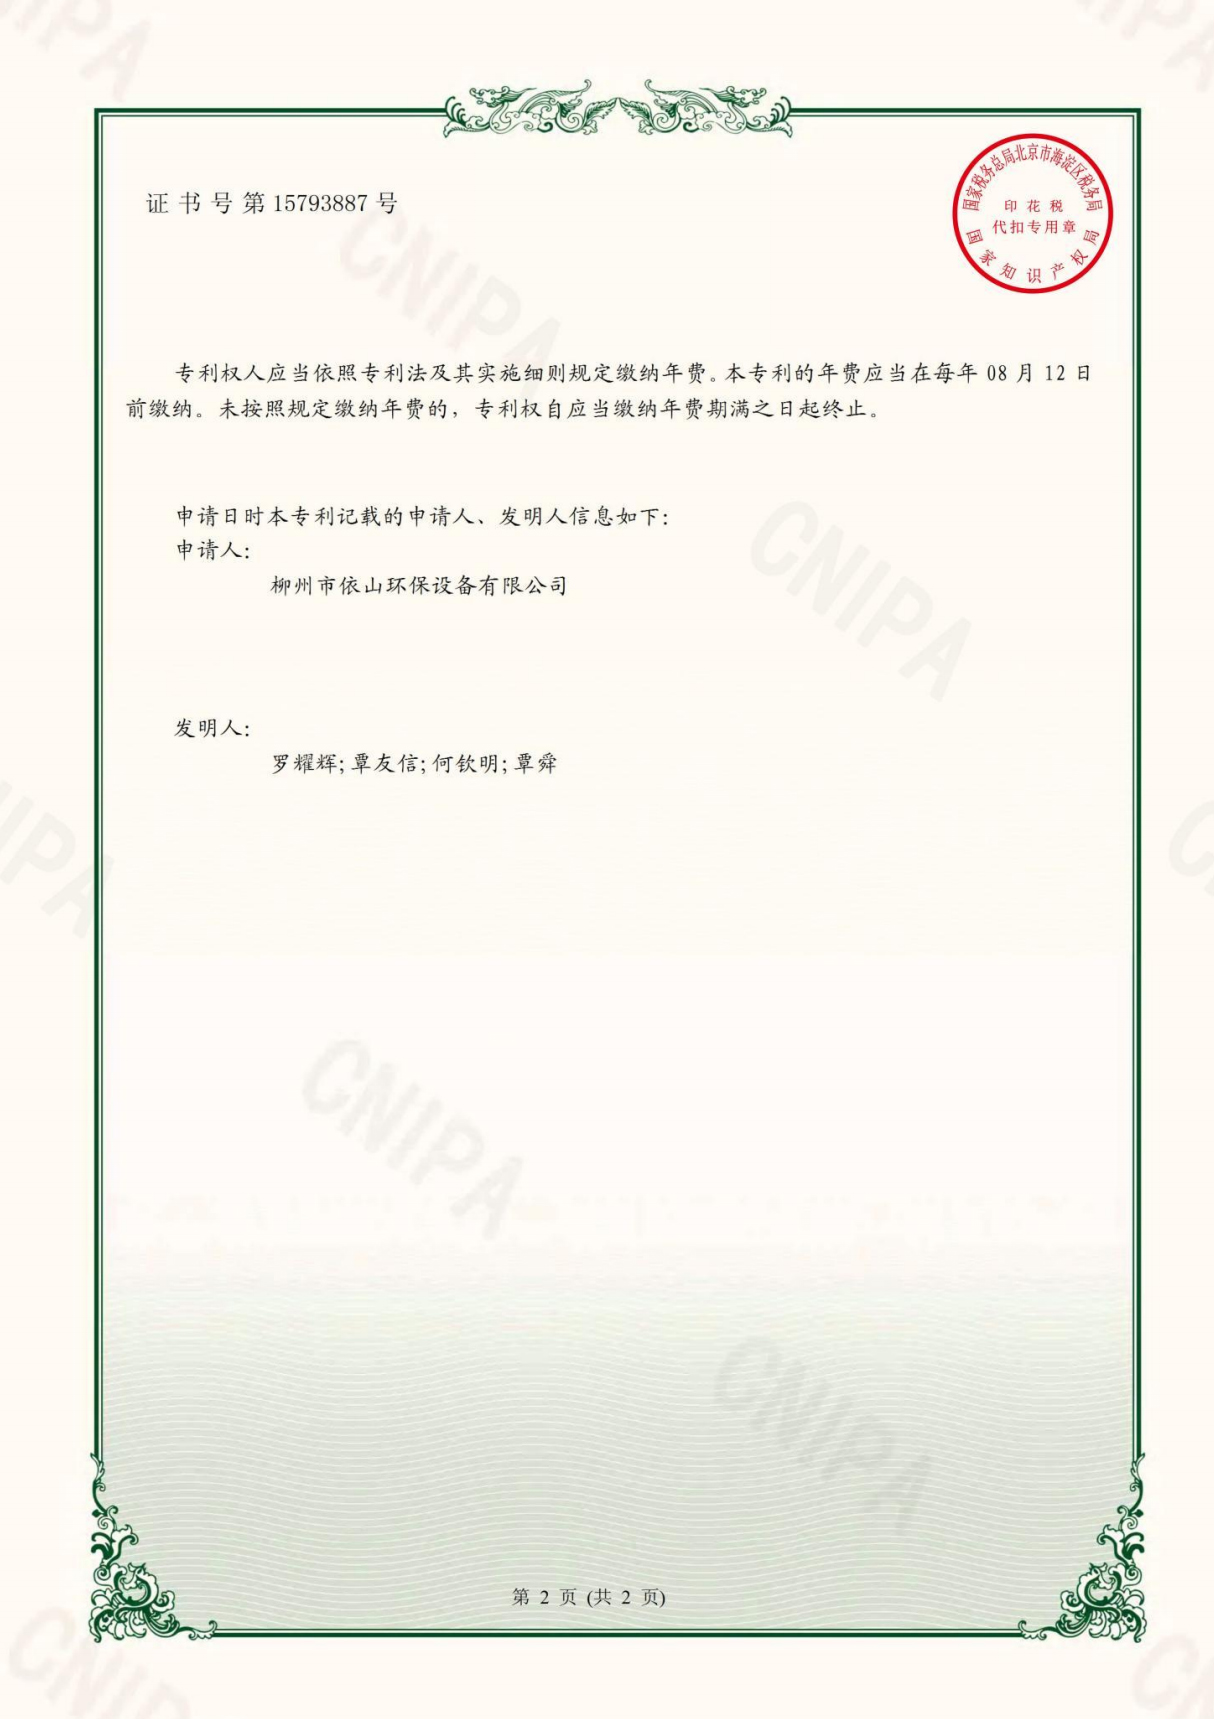 柳州市依山环保设备有限公司资质文件_27.jpg